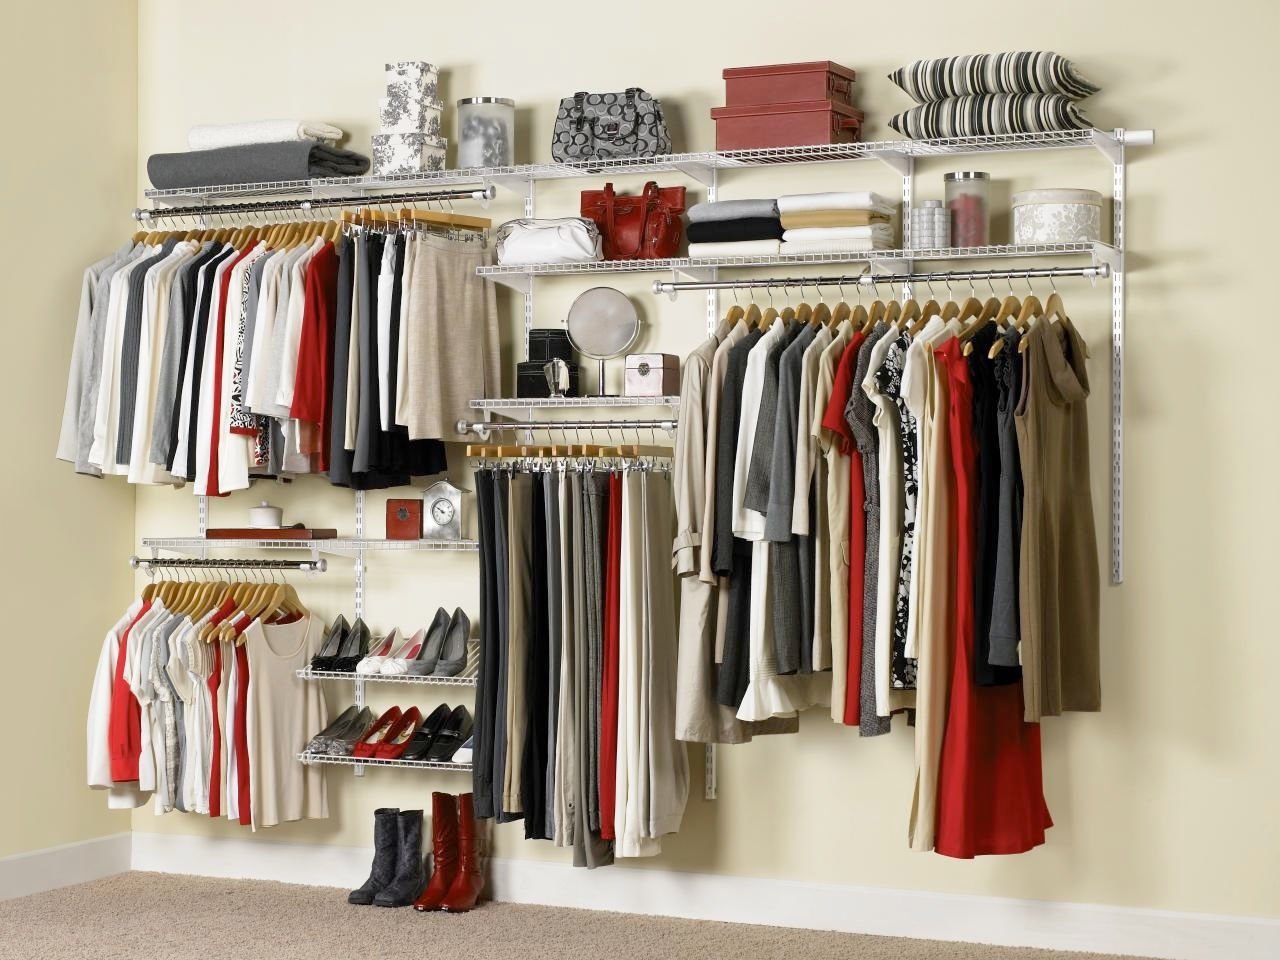 Вид гардероба. Rubbermaid гардеробные системы. Система хранения вещей в гардеробной. Открытый гардероб для одежды. Полки для вещей в гардеробную.